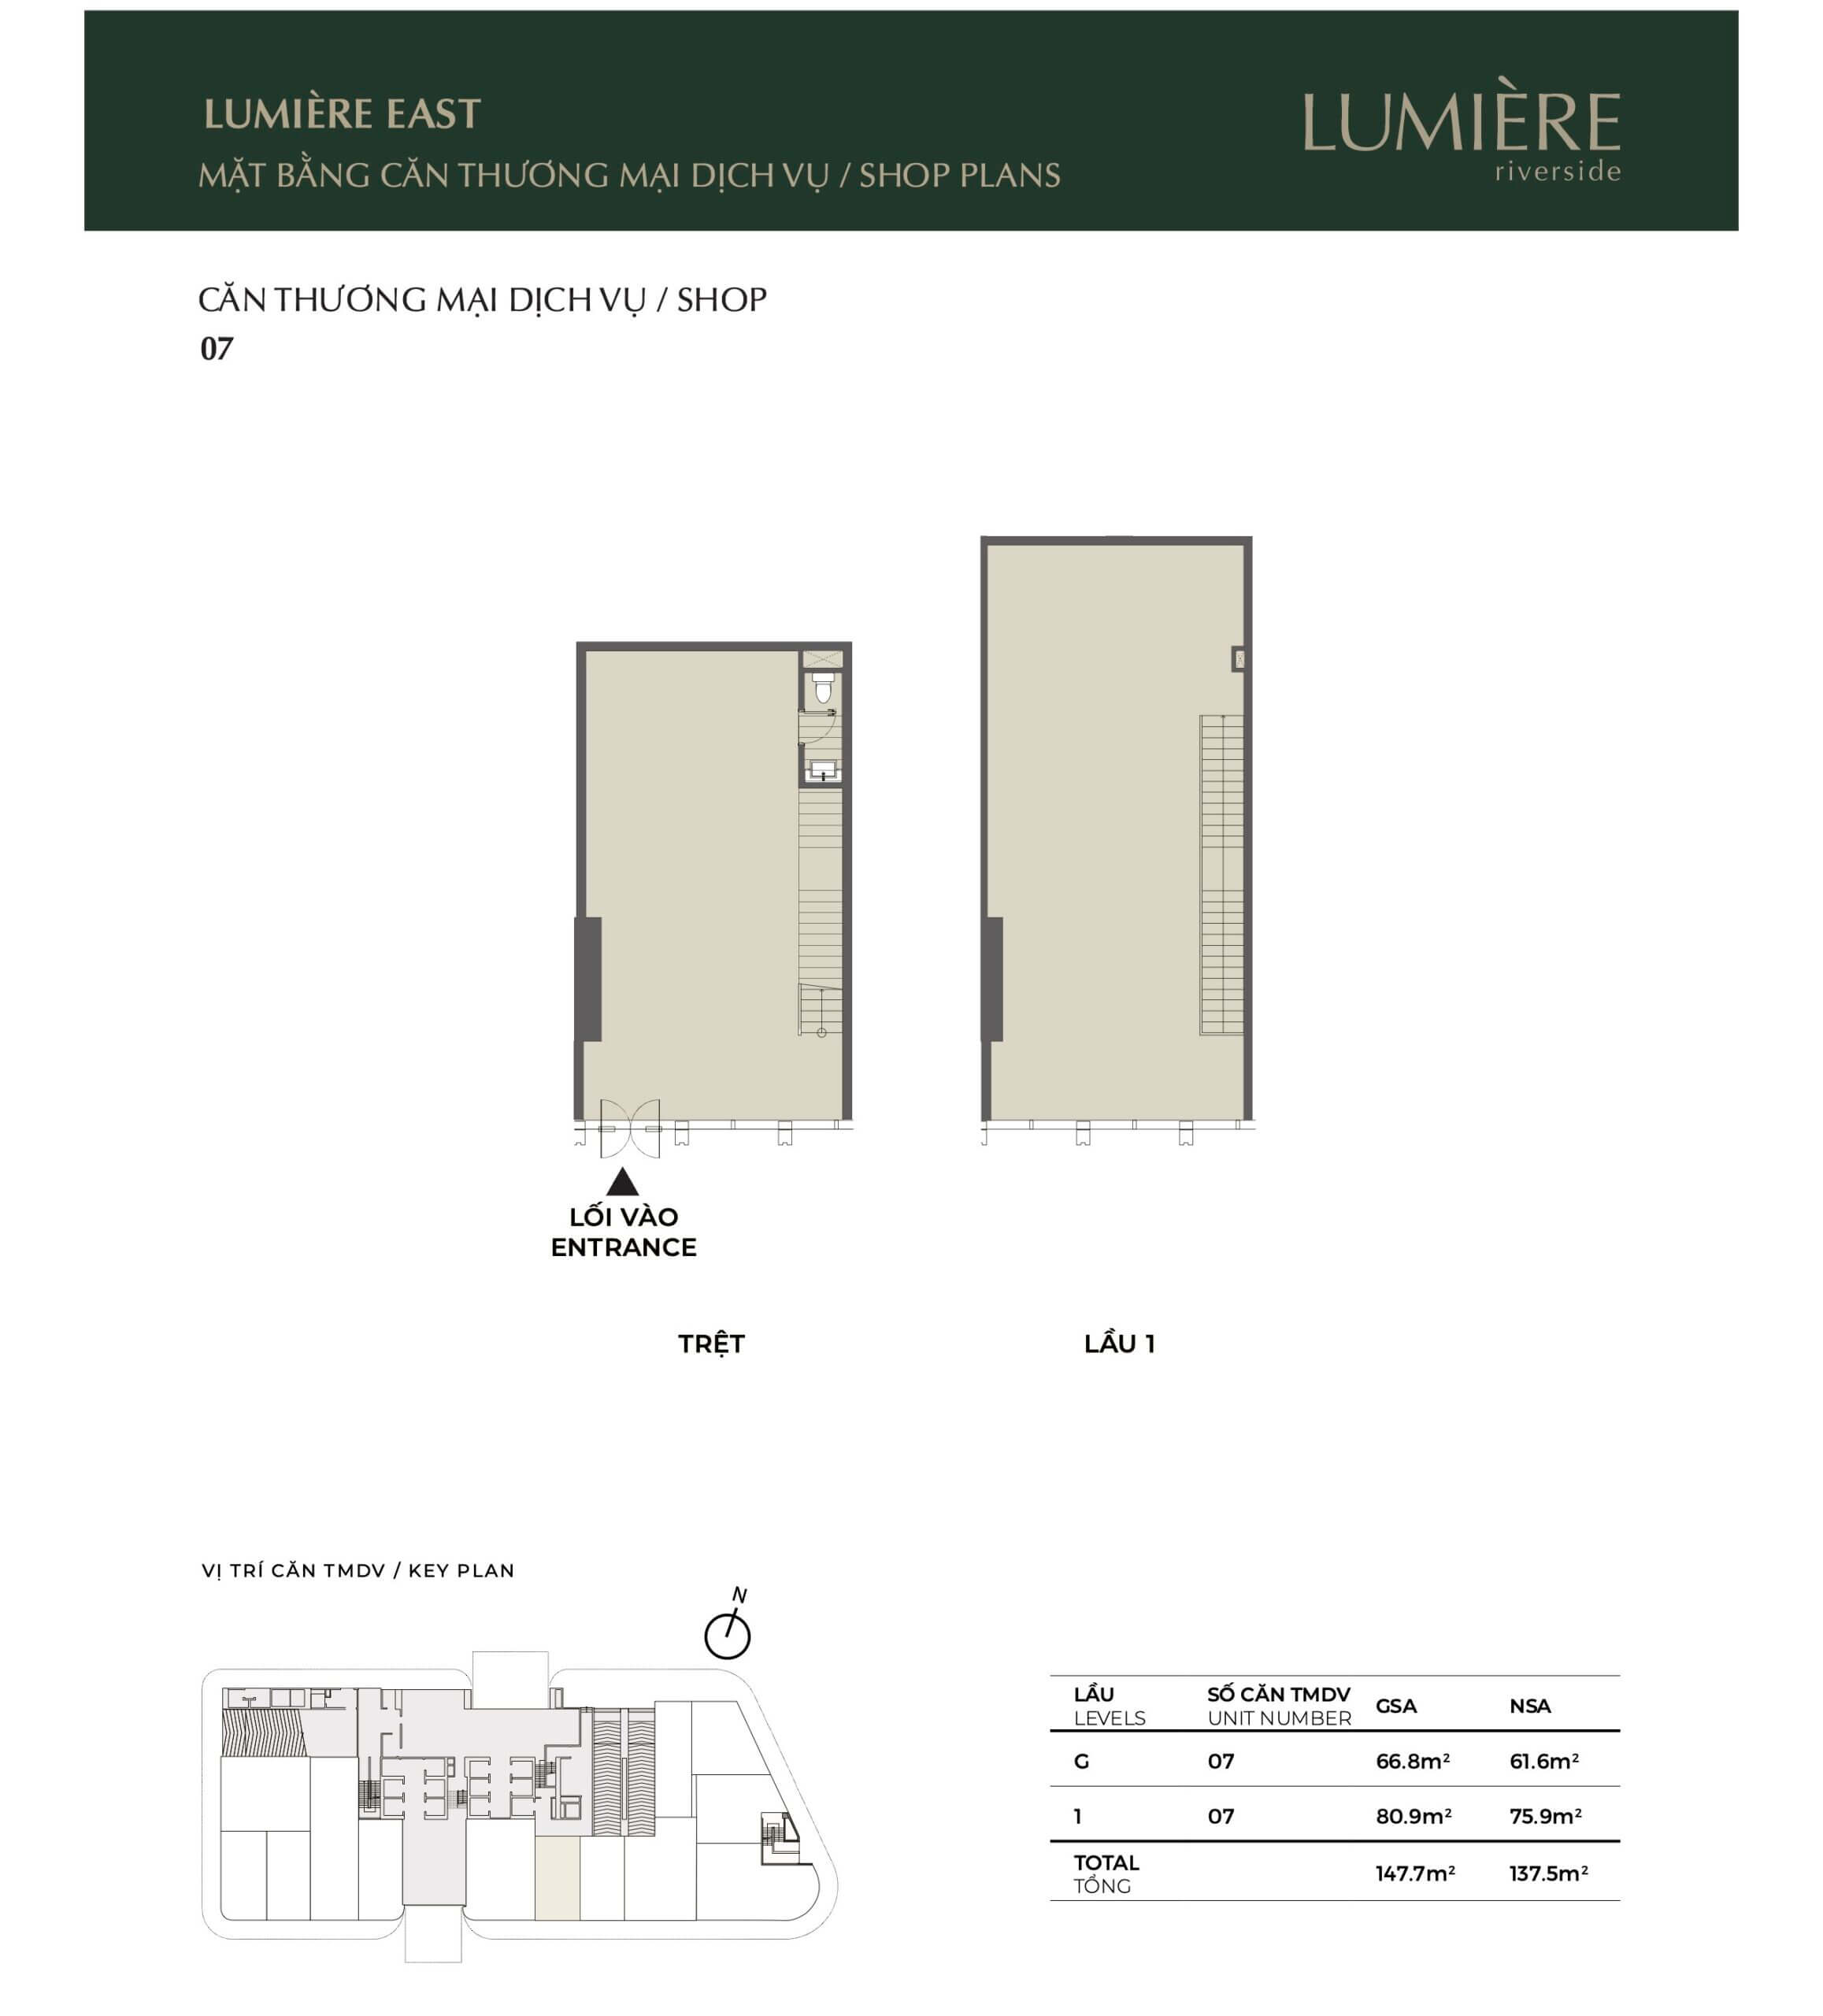 Mặt bằng layout shophouse Lumiere Riverside tháp East căn số 07 - ký gửi cho thuê chuyển nhượng mua bán căn hộ Lumiere Riverside